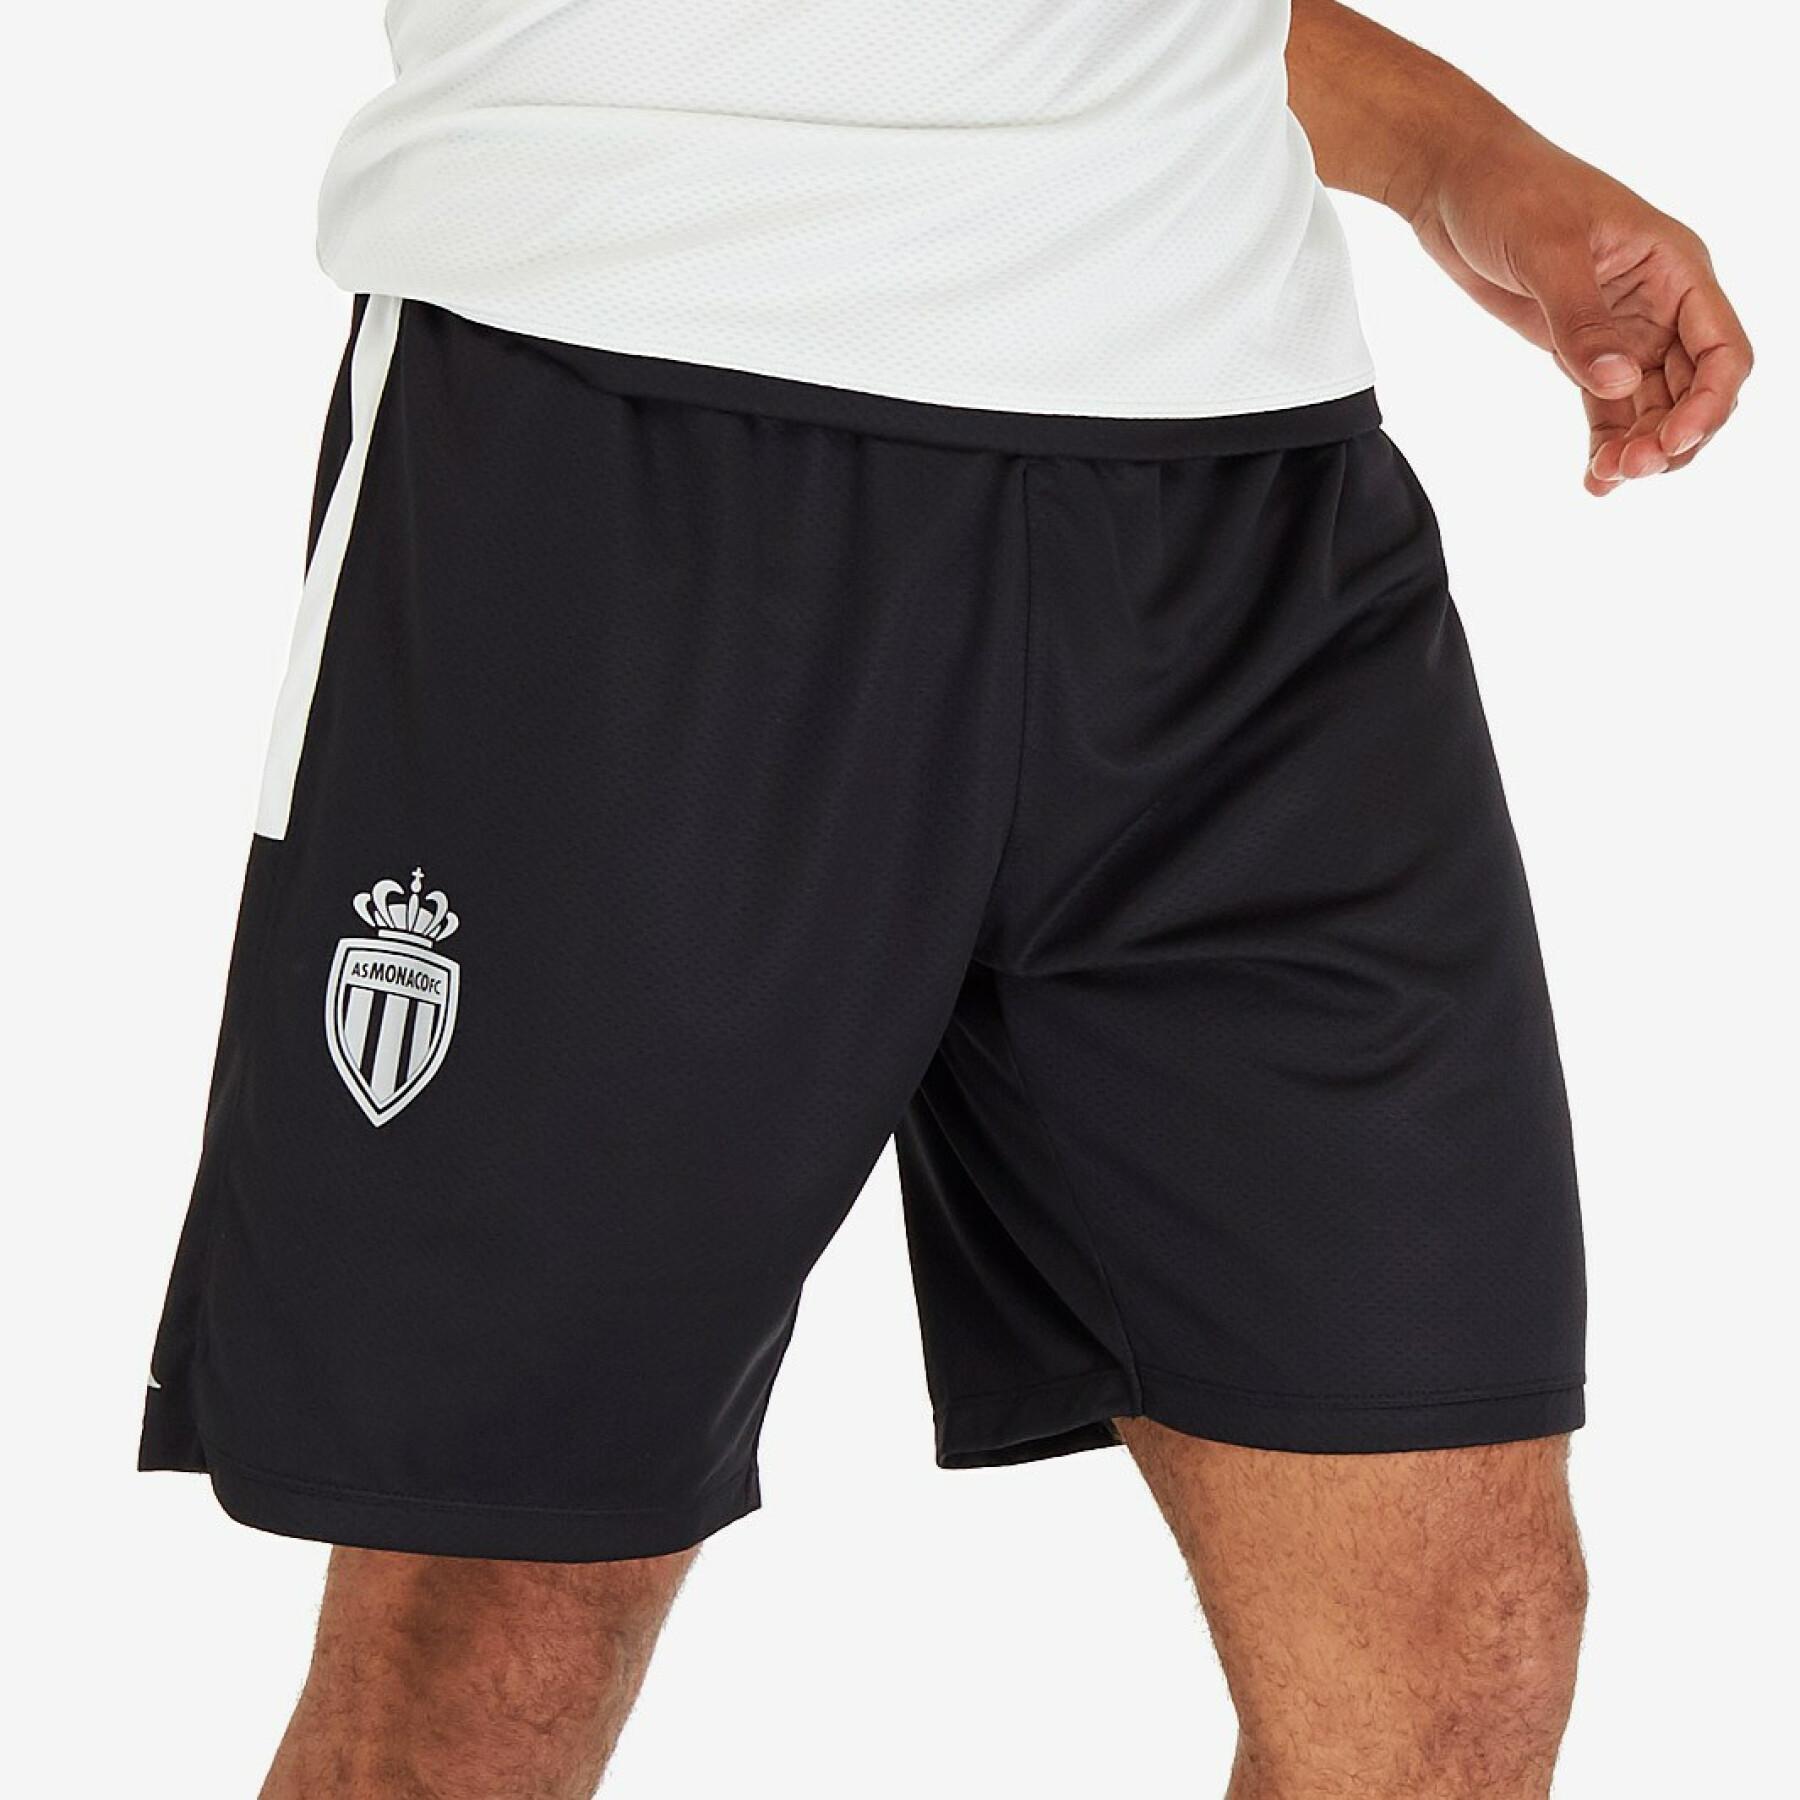 Kinder shorts ahora 3 AS Monaco